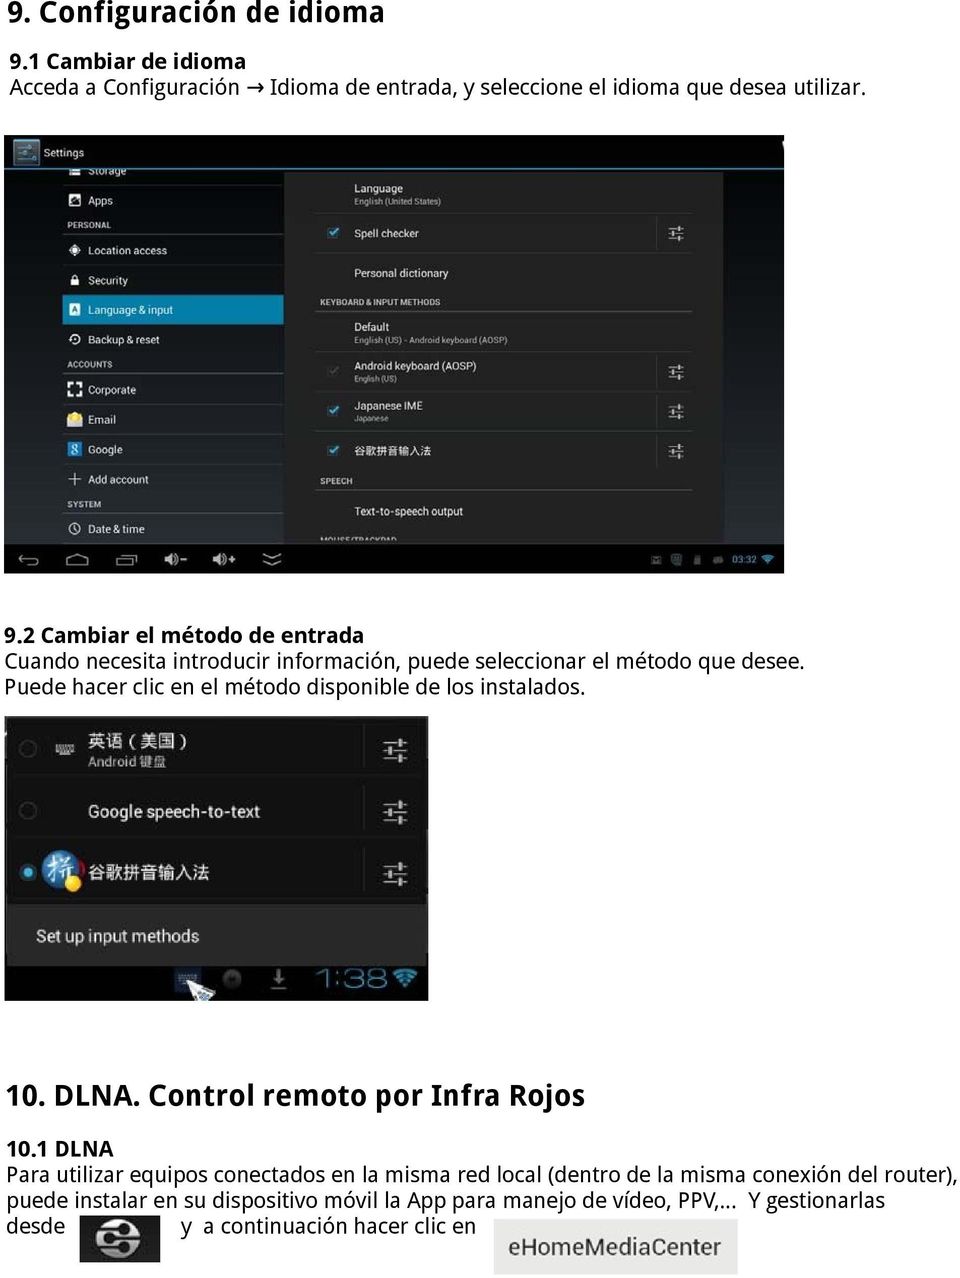 1 DLNA Para utilizar equipos conectados en la misma red local (dentro de la misma conexión del router), puede instalar en su dispositivo móvil la